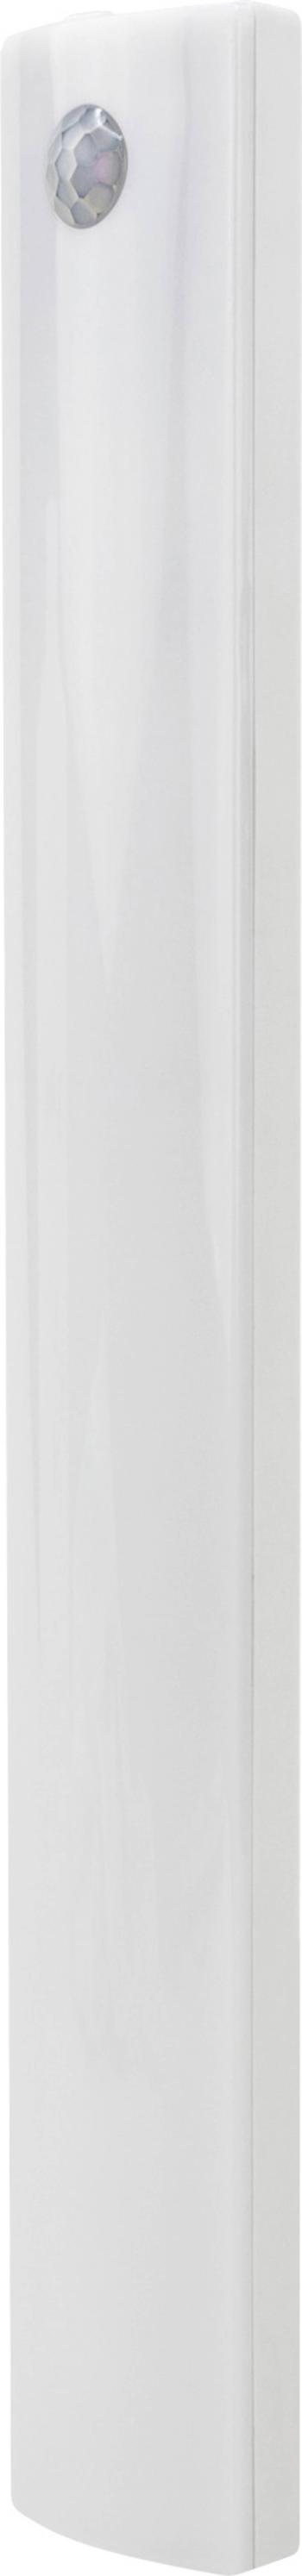 Ansmann 1600-0438 cabinet-light-medium LED podhľadové svetlo s PIR senzorom   18 W chladná biela, prírodná biela, teplá